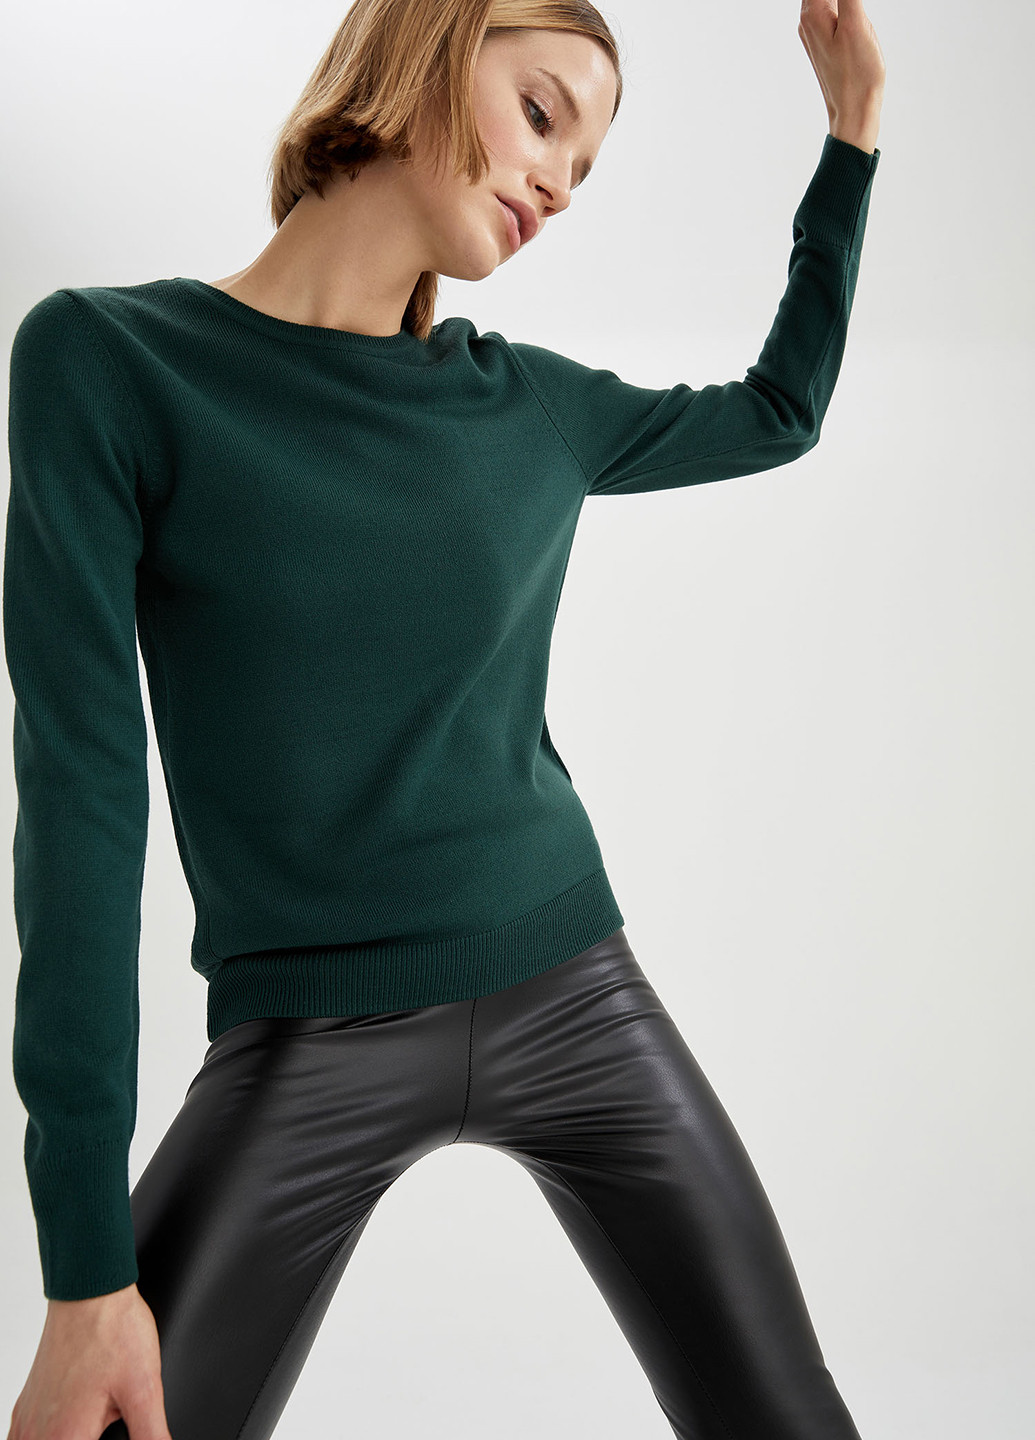 Темно-зеленый демисезонный свитер джемпер DeFacto